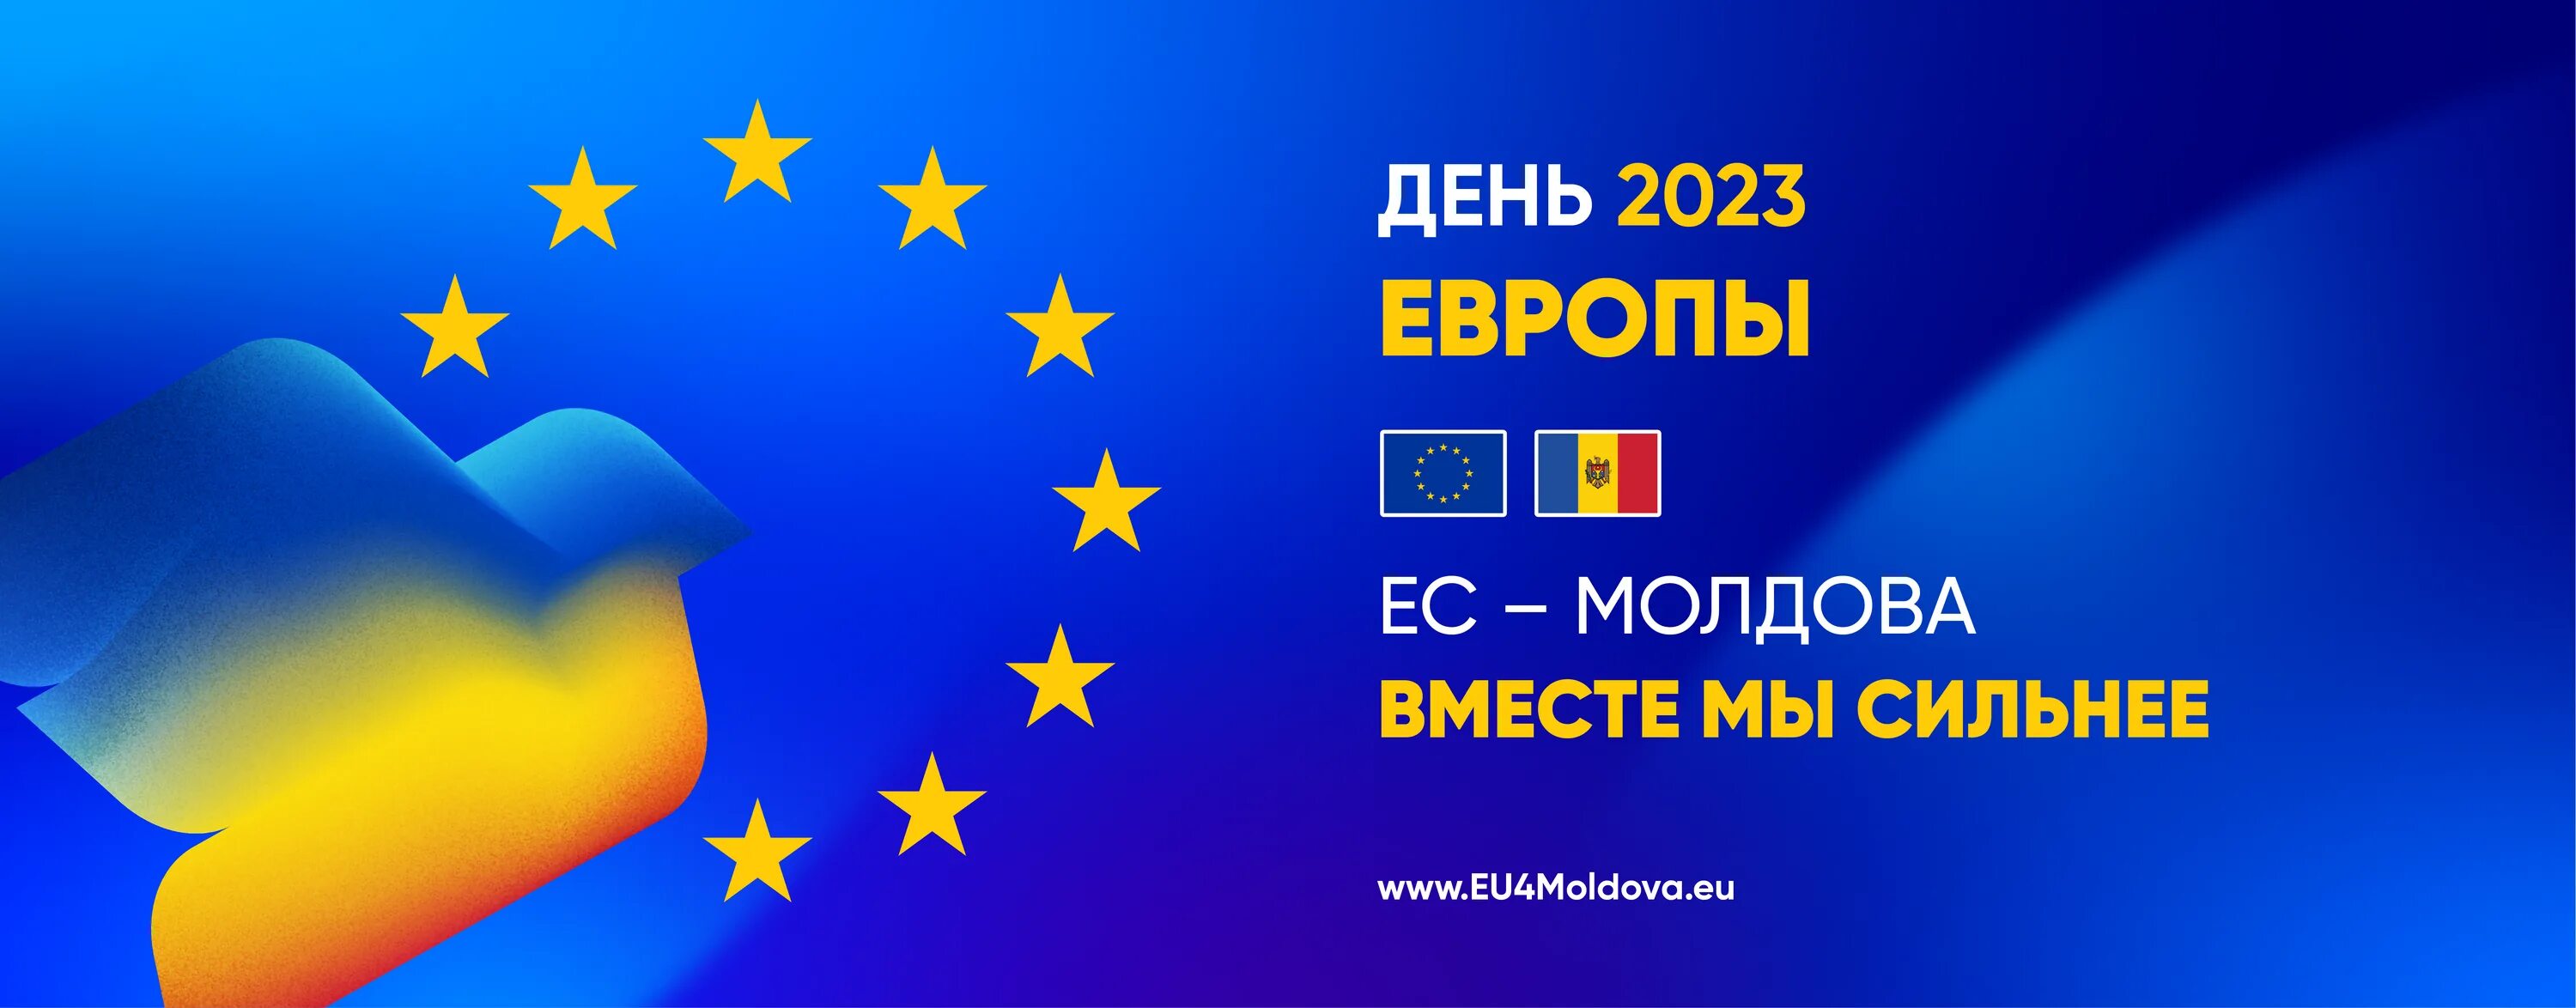 День европы есть. День Европы. День Европы презентация. 21 Мая великое национальное собрание европейская Молдова. Объединение Румынии и Молдавии 2023.